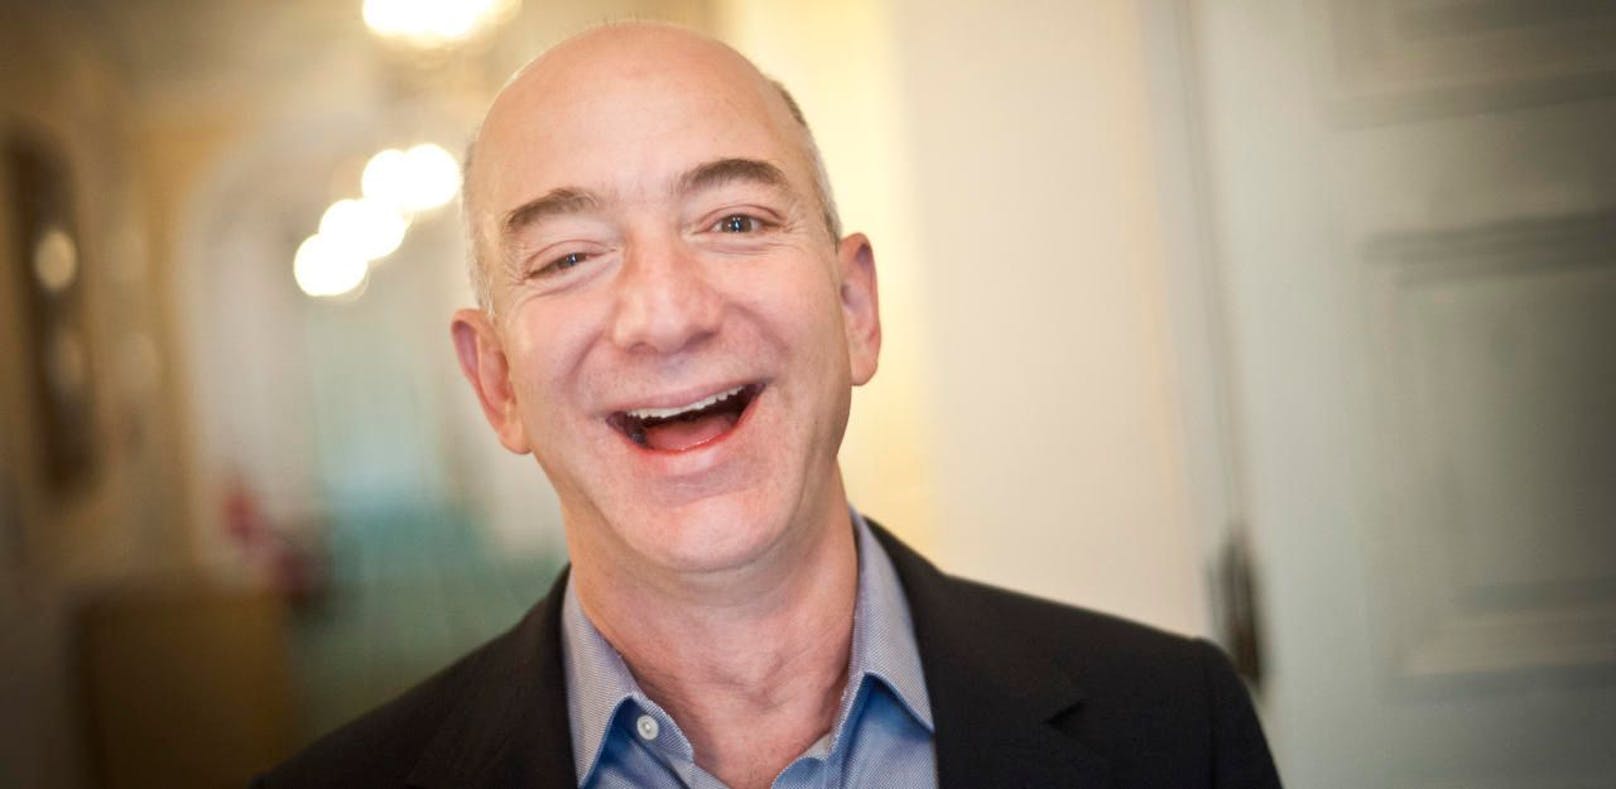 Amazon-Chef Jeff Bezos reichster Mensch der Welt